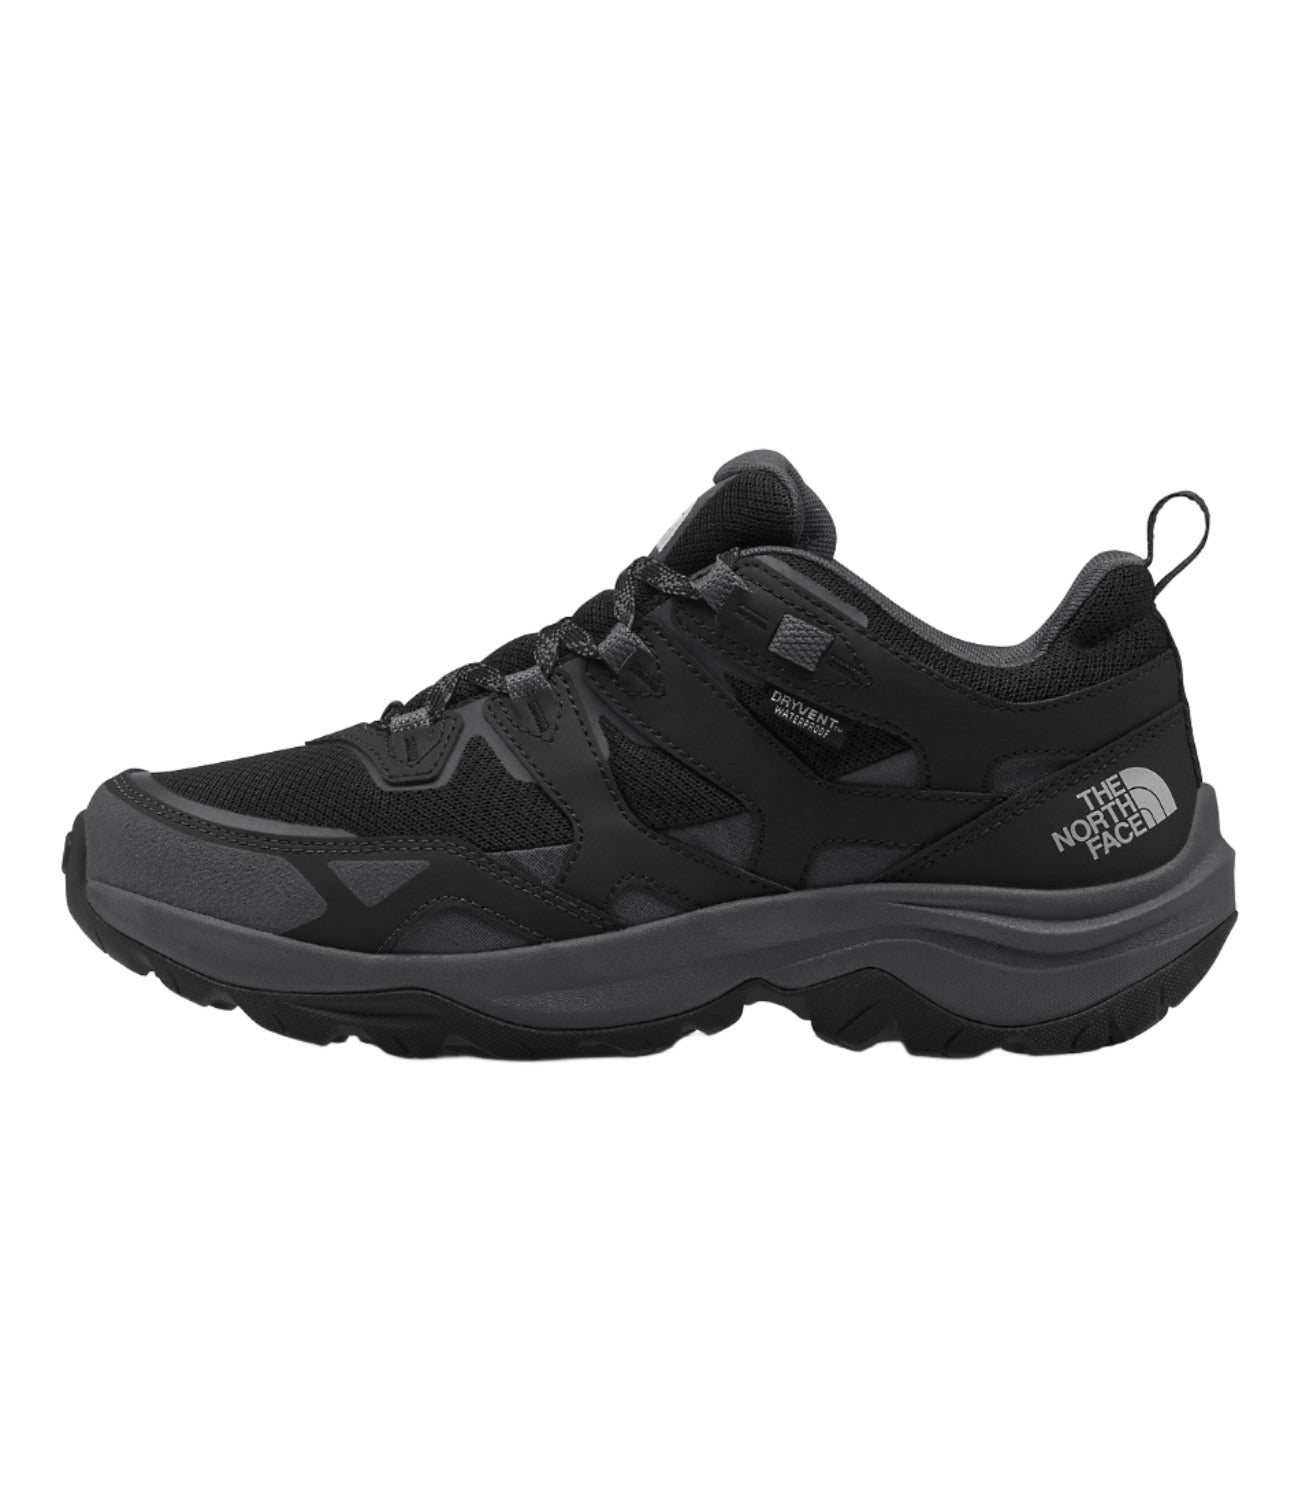 The North Face Men’s Hedgehog 3 WP Footwear North Face TNF Black/Asphalt Grey-KT0 8 